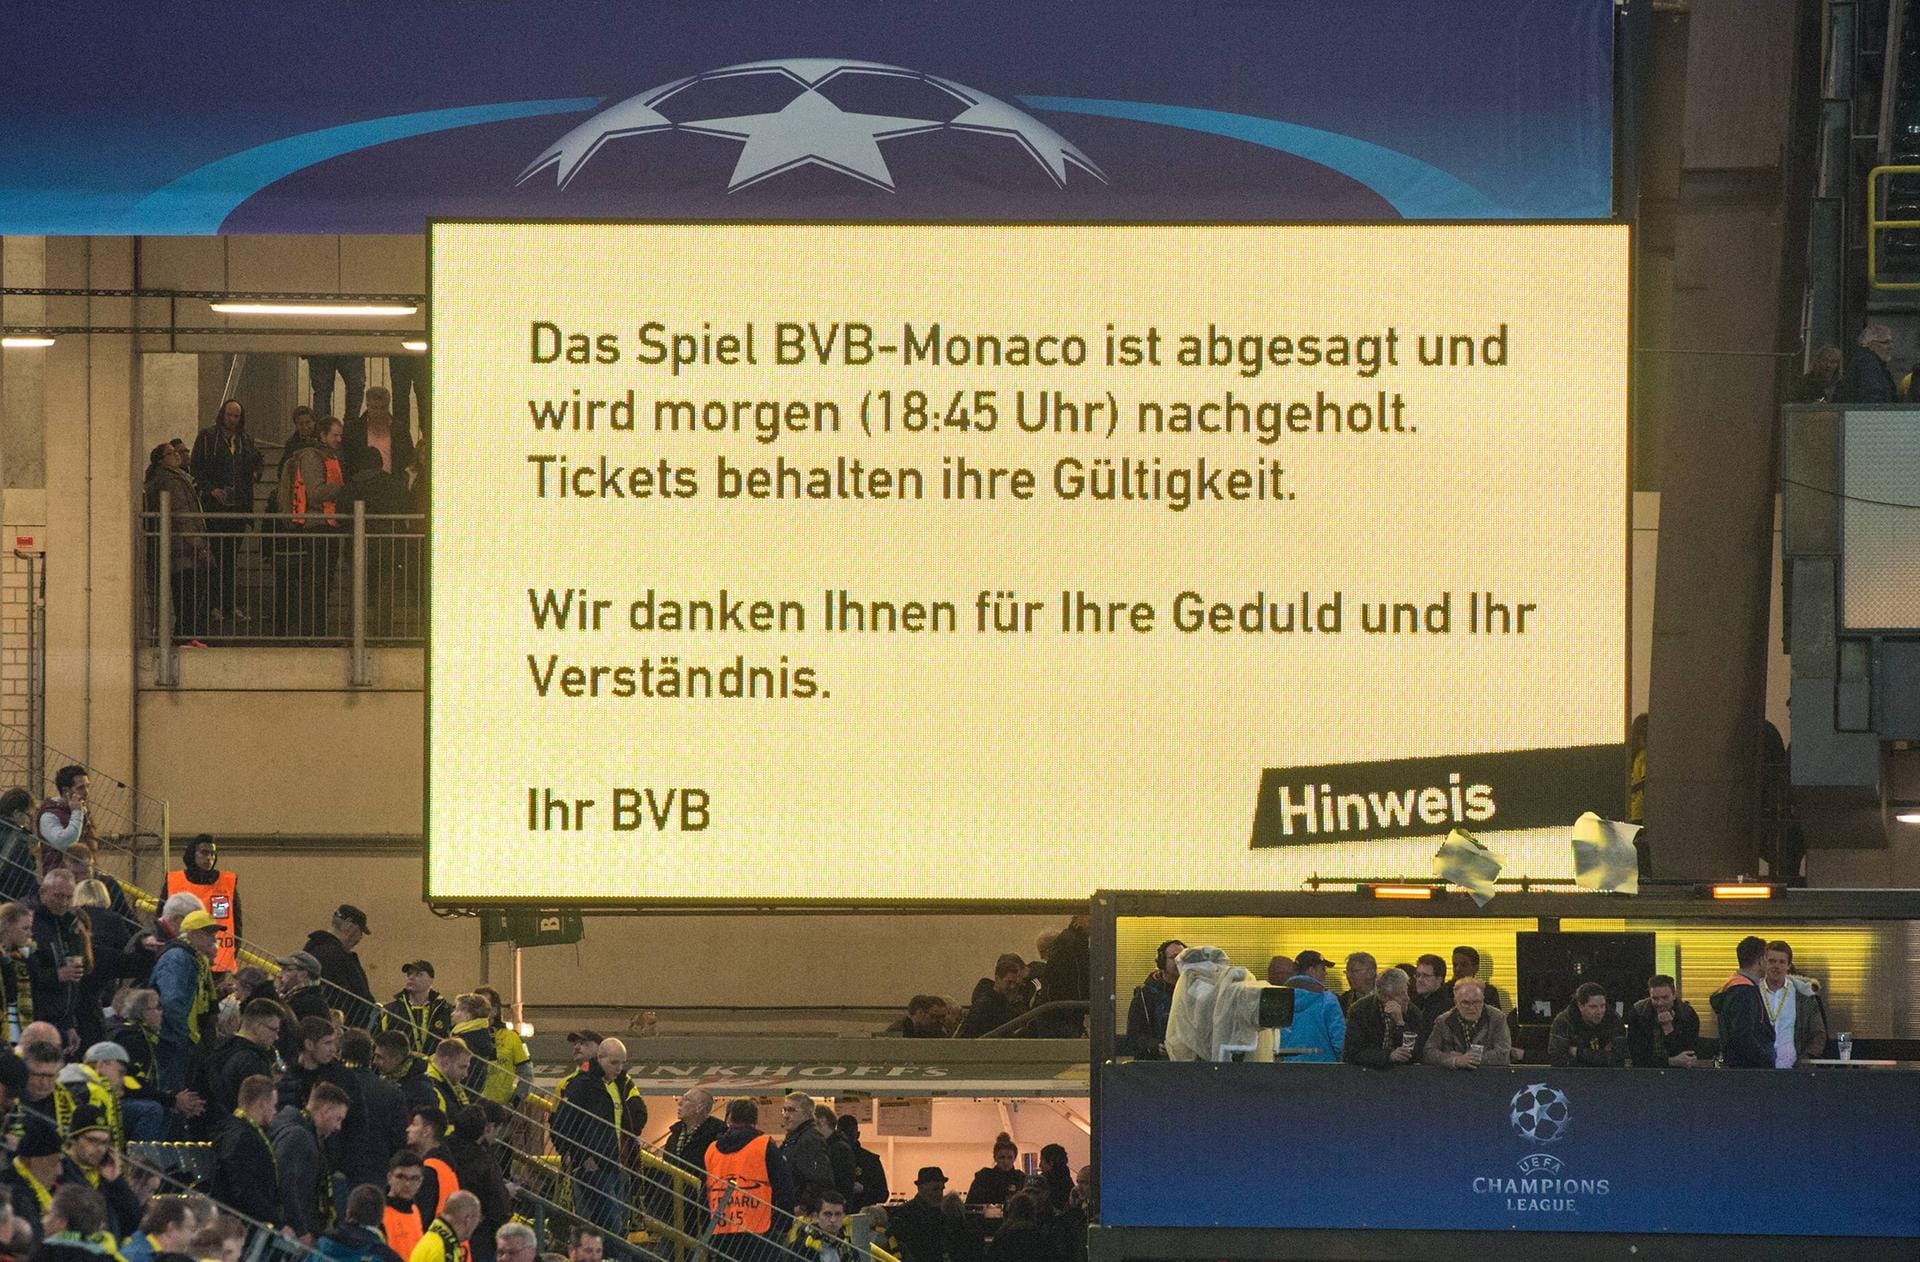 Um 20:30 Uhr verkündet der BVB über die Anzeigentafel und Twitter, dass die Champions-League-Partie abgesagt und am nächsten Tag um 18:45 Uhr wiederholt wird.